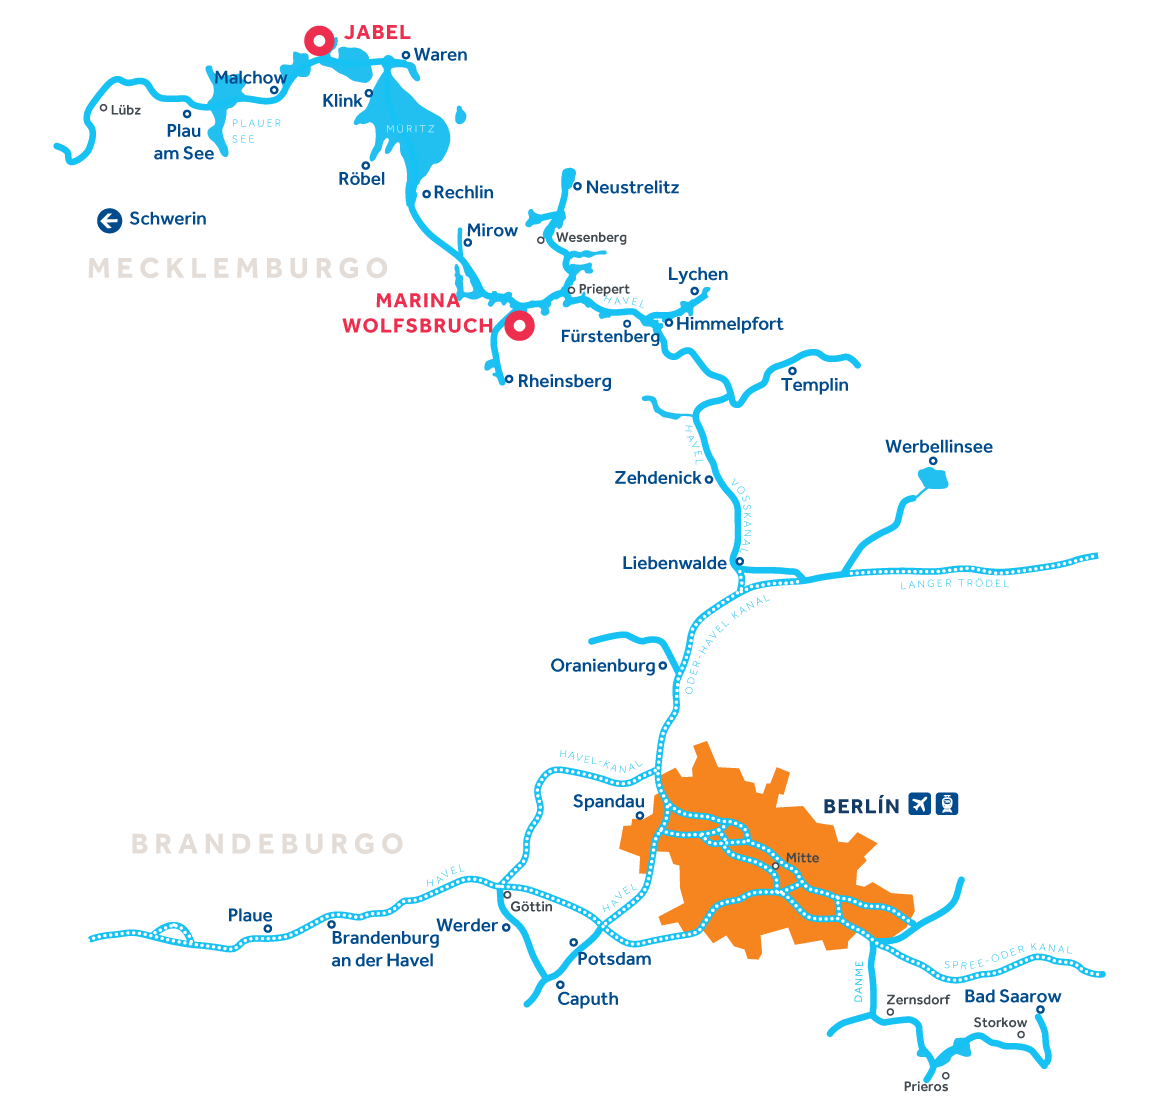 Mapa de la región de navegación en Alemania